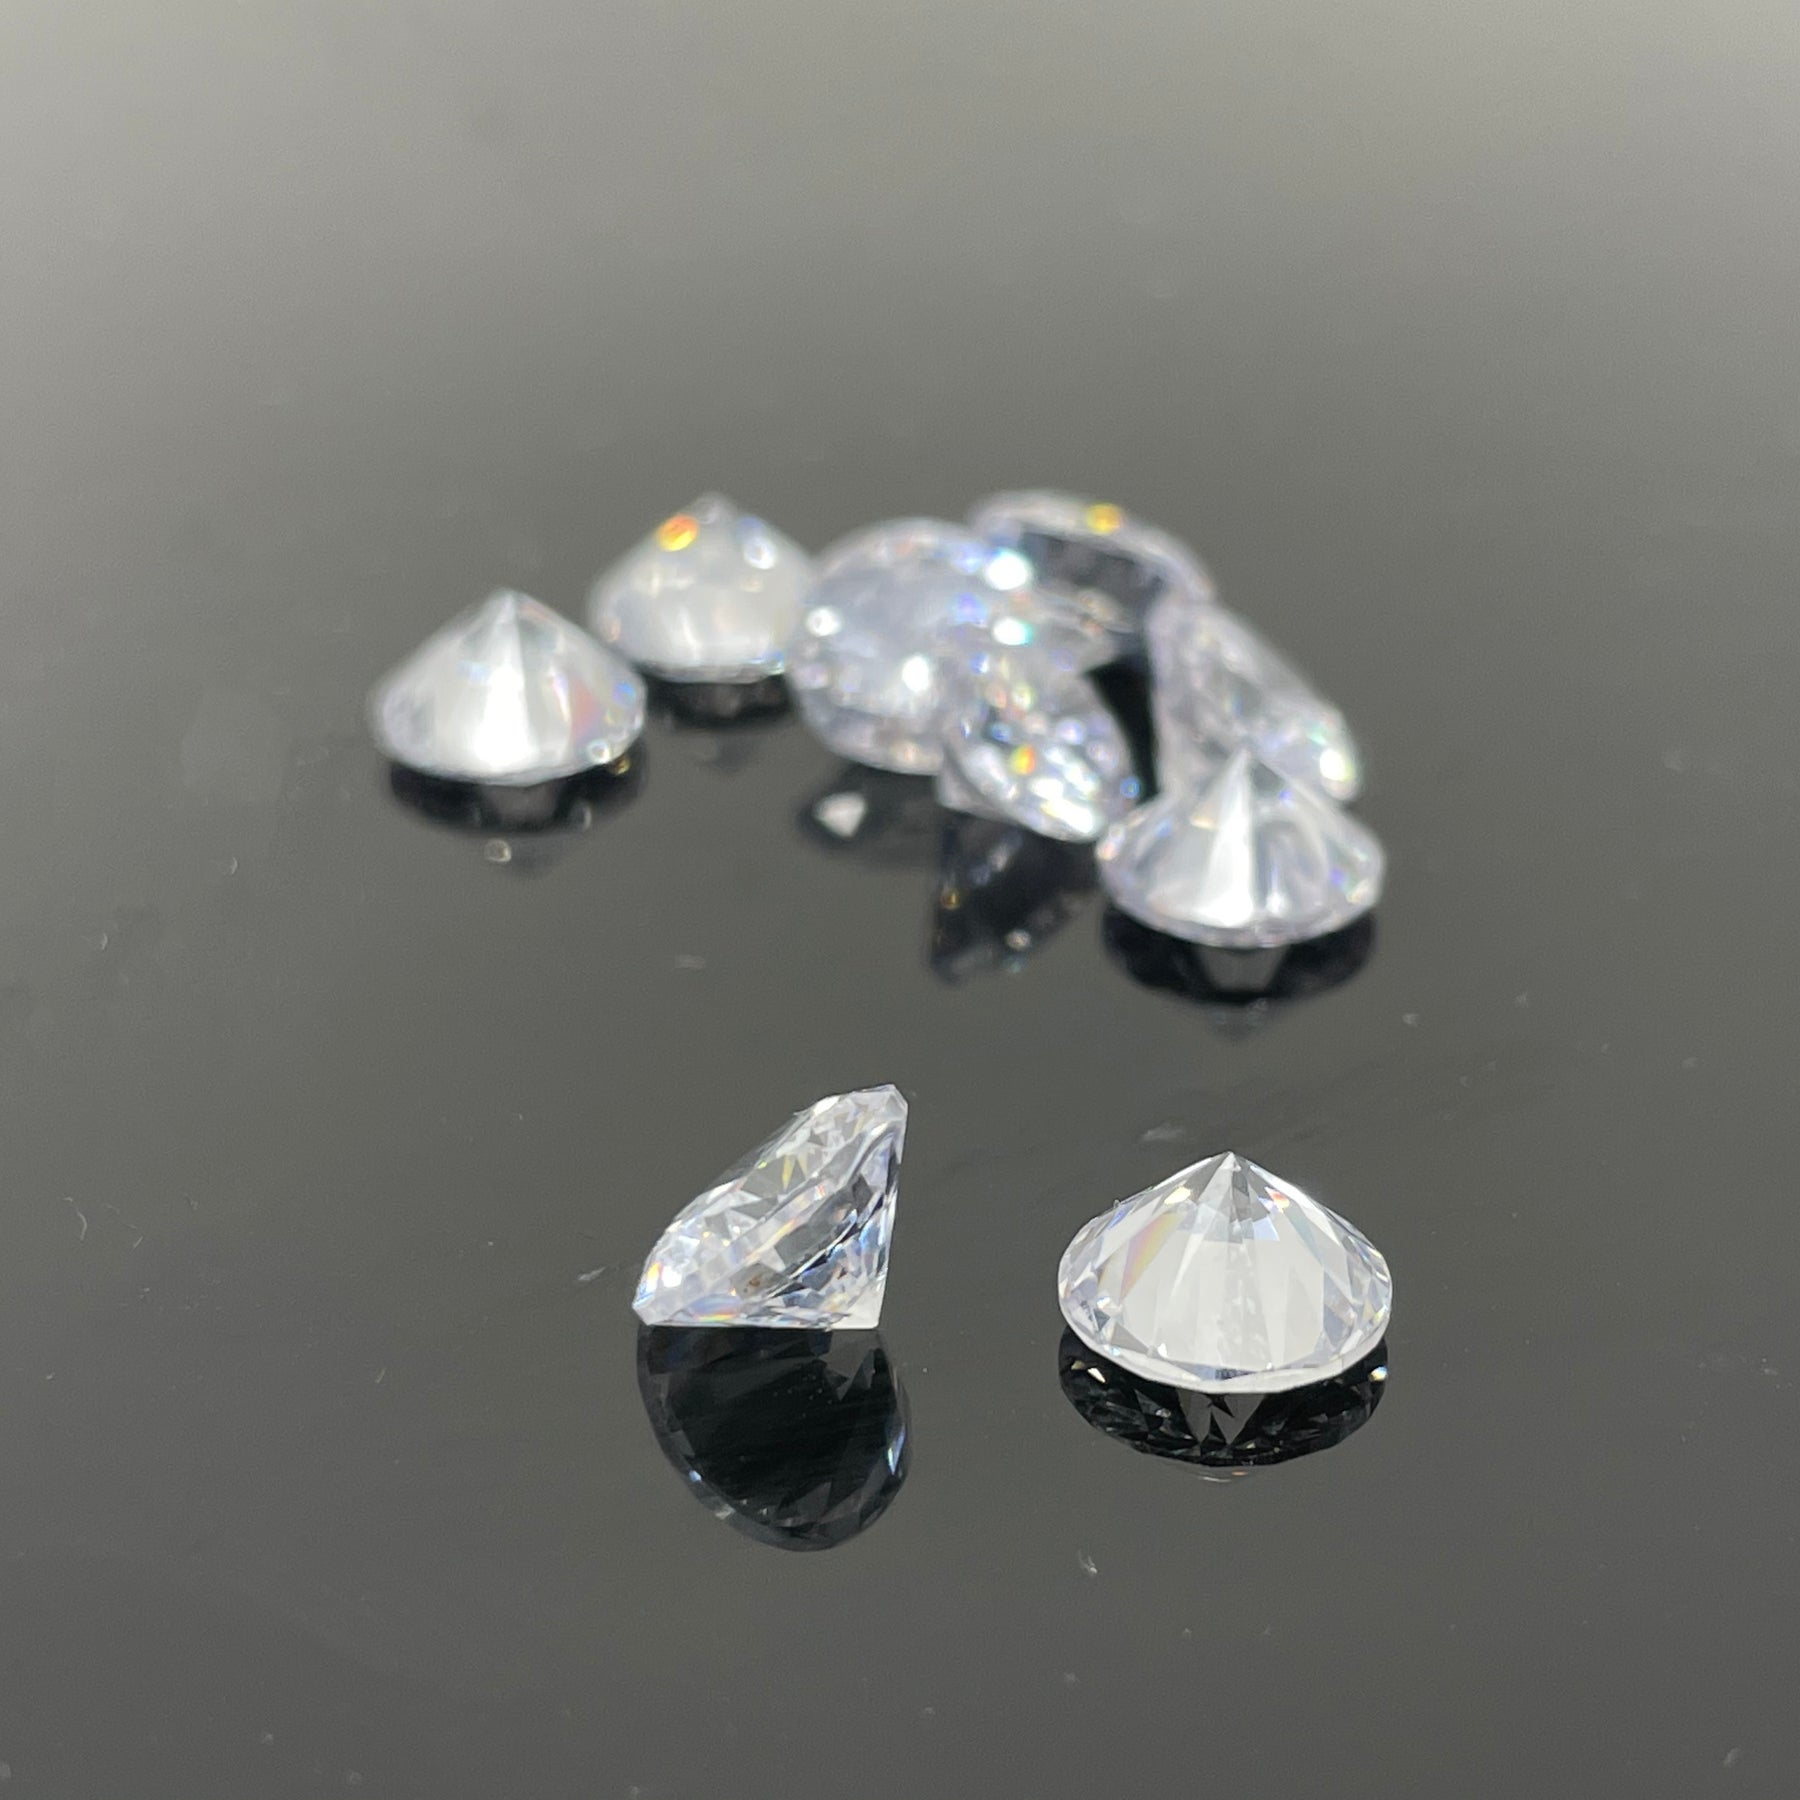 AFM Diamond Marble Pearls